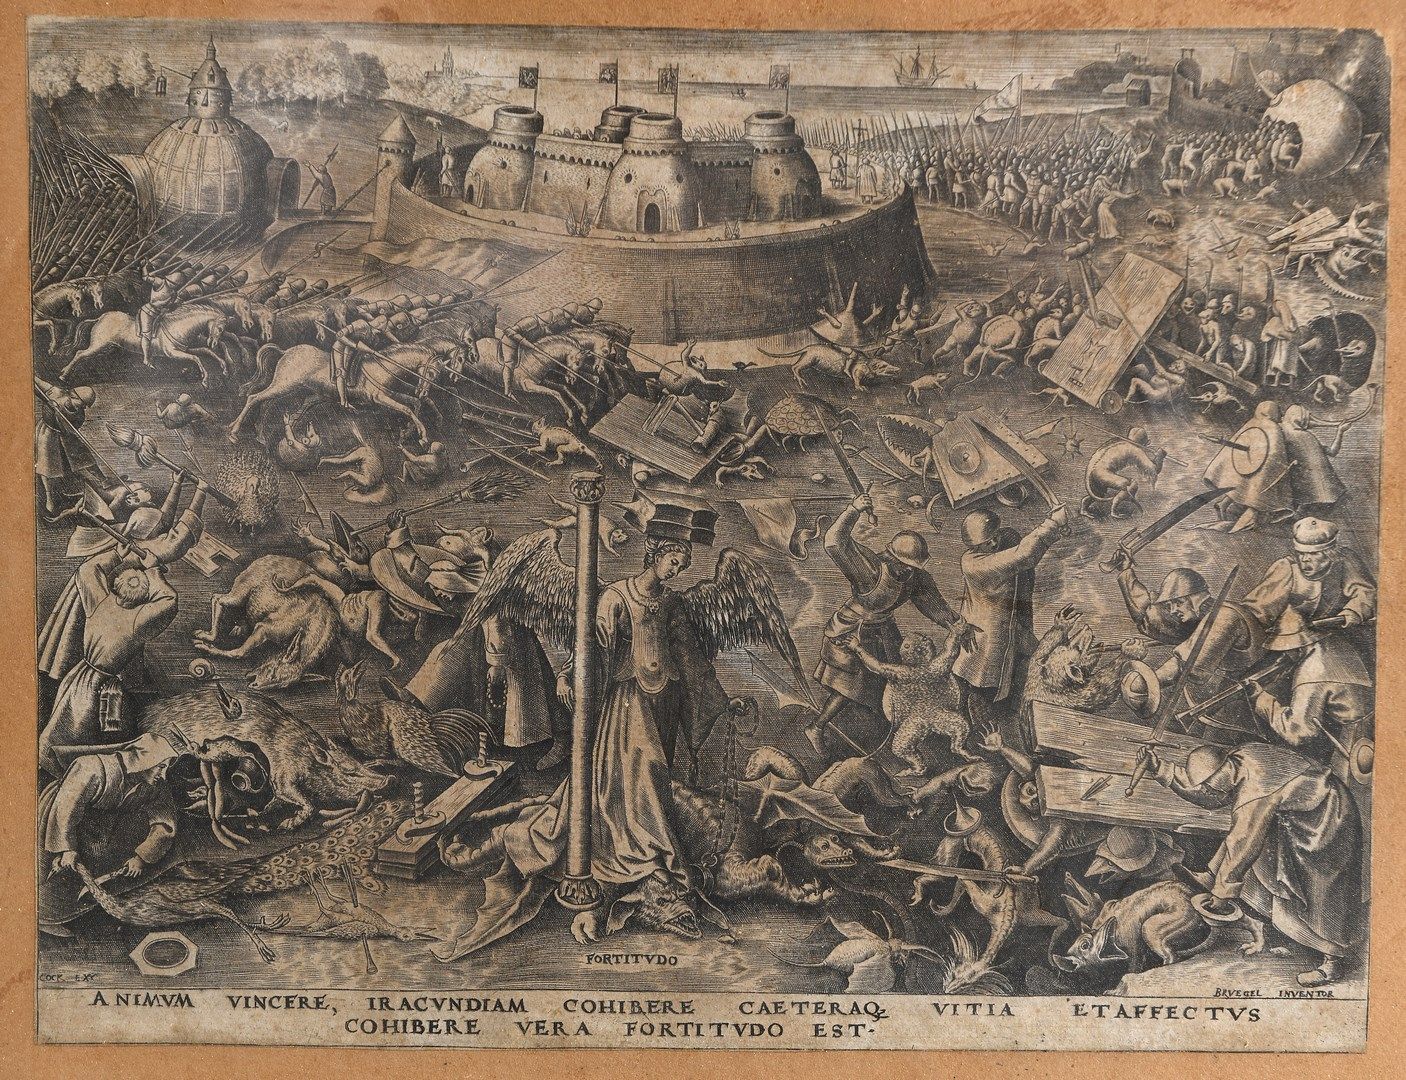 Null Peter BRUEGHEL (c.1525-c.1569)

FORTITUDO

Placa de la serie de las Siete V&hellip;